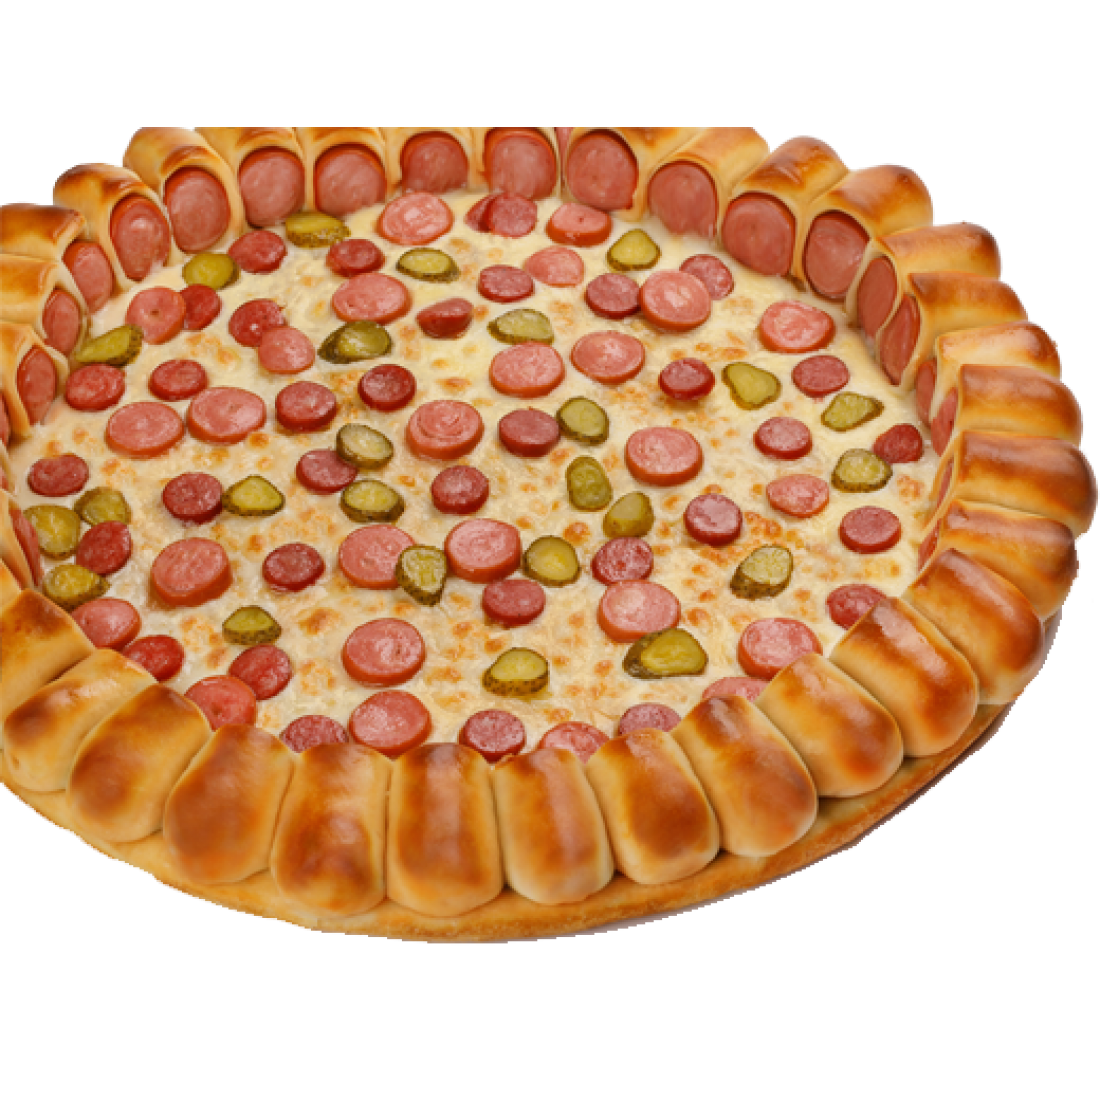 Сити пицца заказать. Сити пицца пицца с мини хотдогами. Пицца с сосисками. Пицца с сосисками по краям. Пицца с бортиками из сосисок.